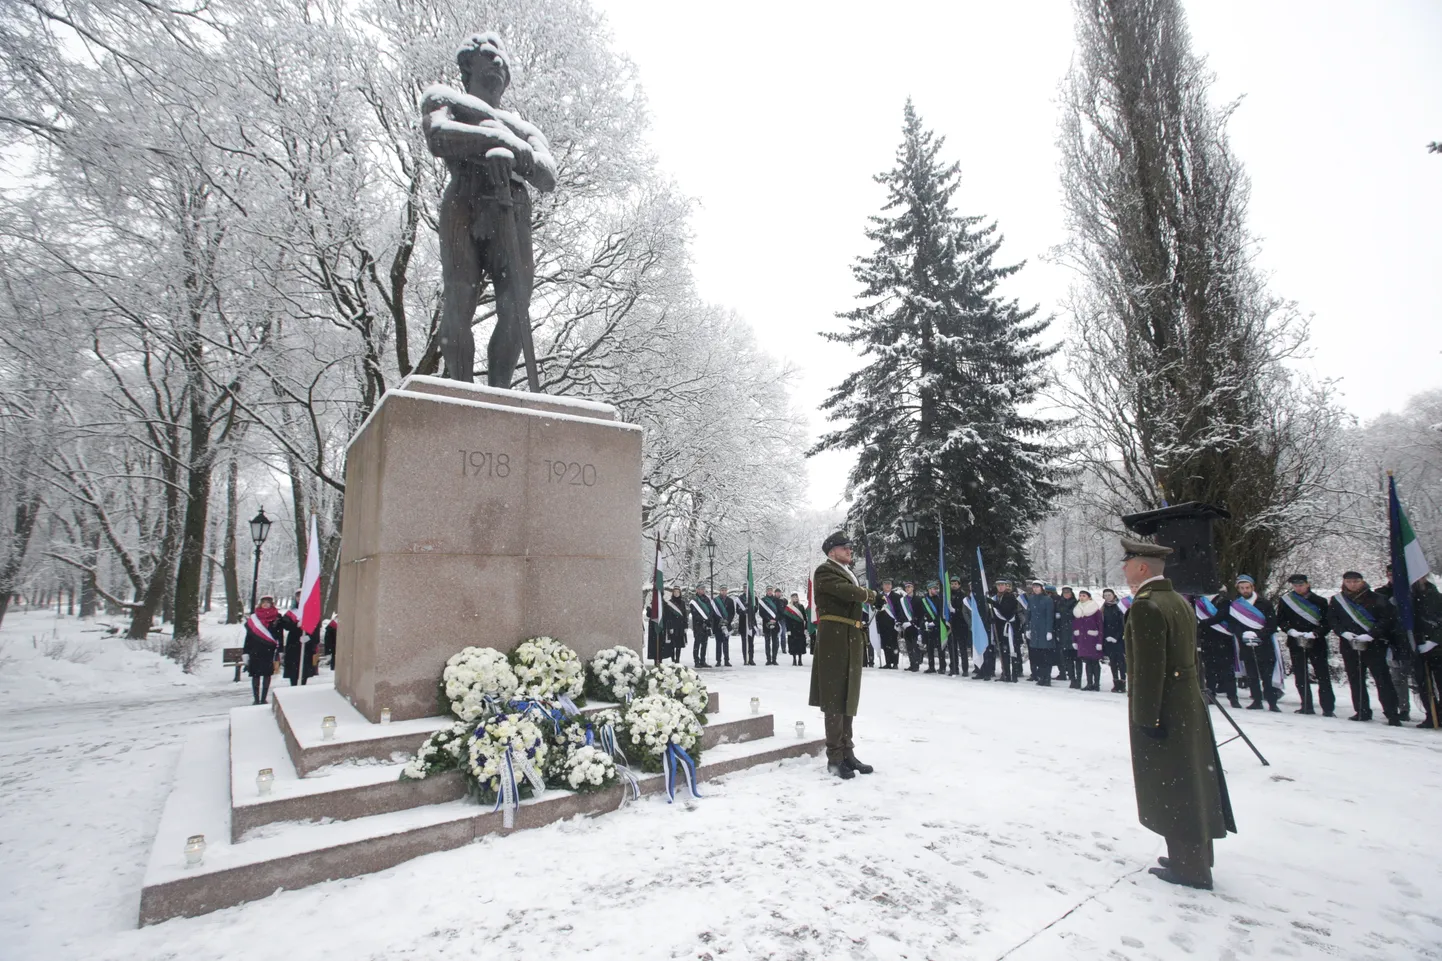 Tartu rahu traditsioonilist mälestustseremooniat peetakse Tartus Kalevipoja kuju juures.